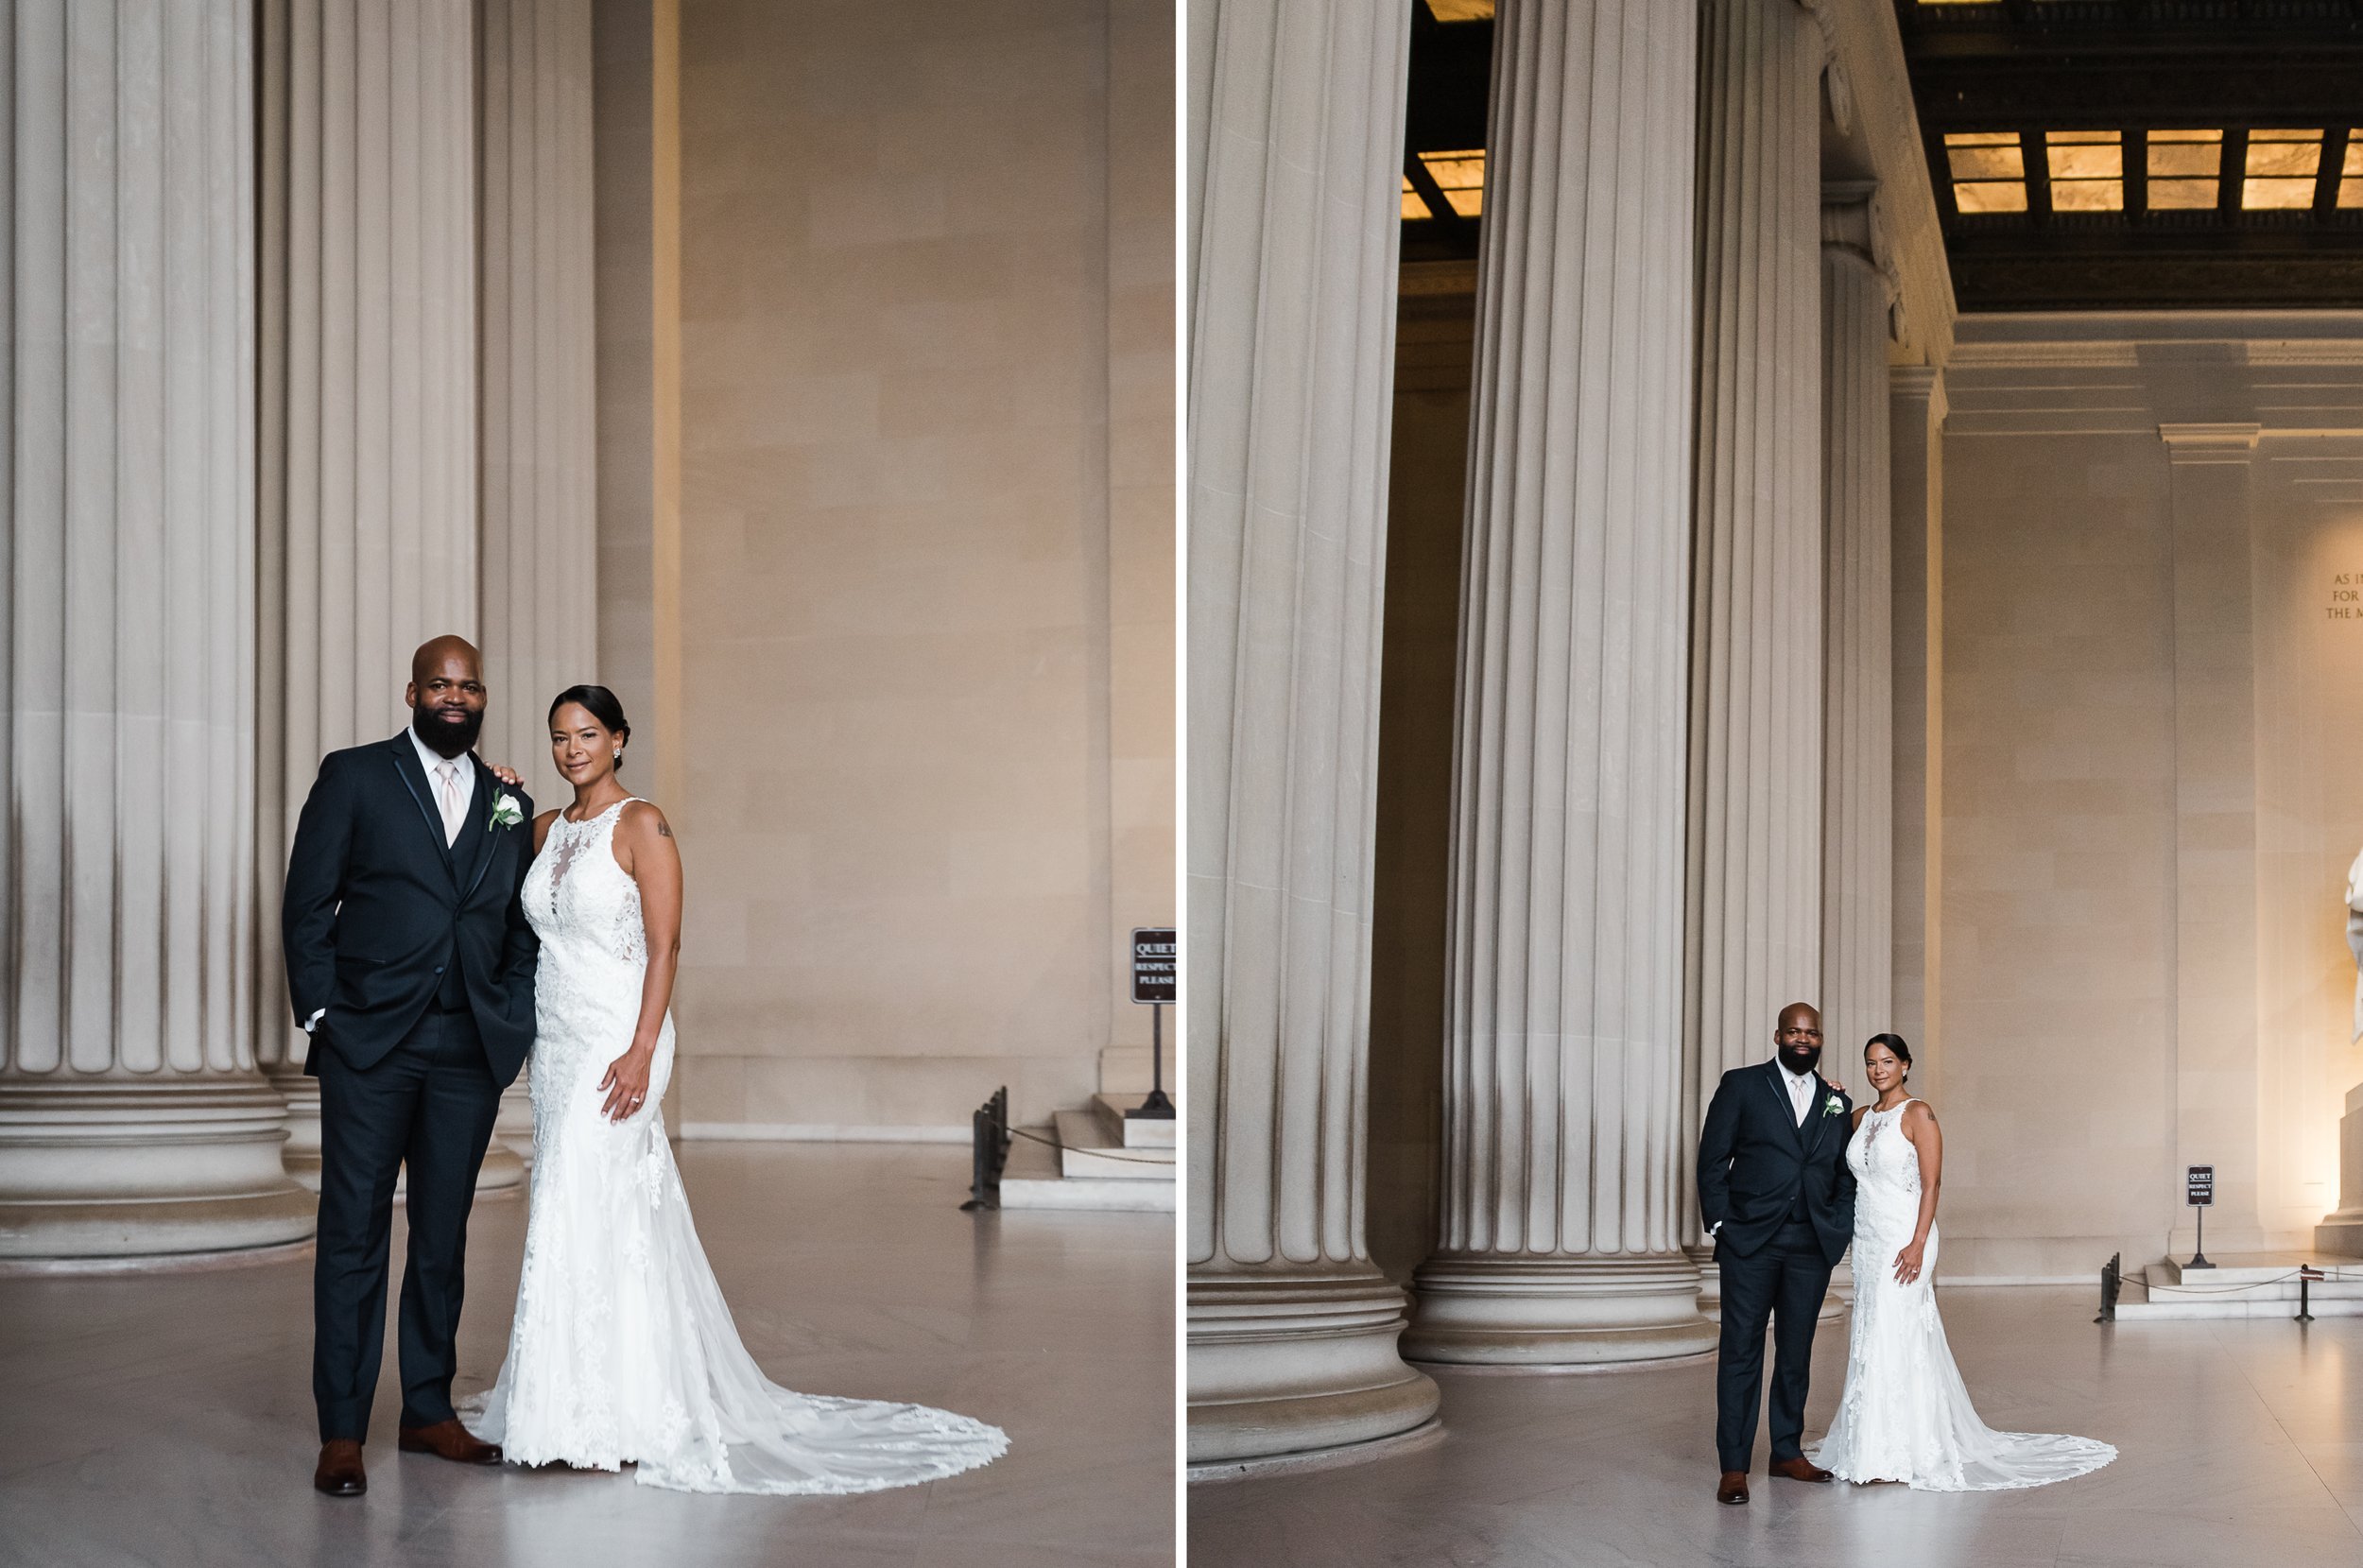  Lincoln memorial wedding photo 